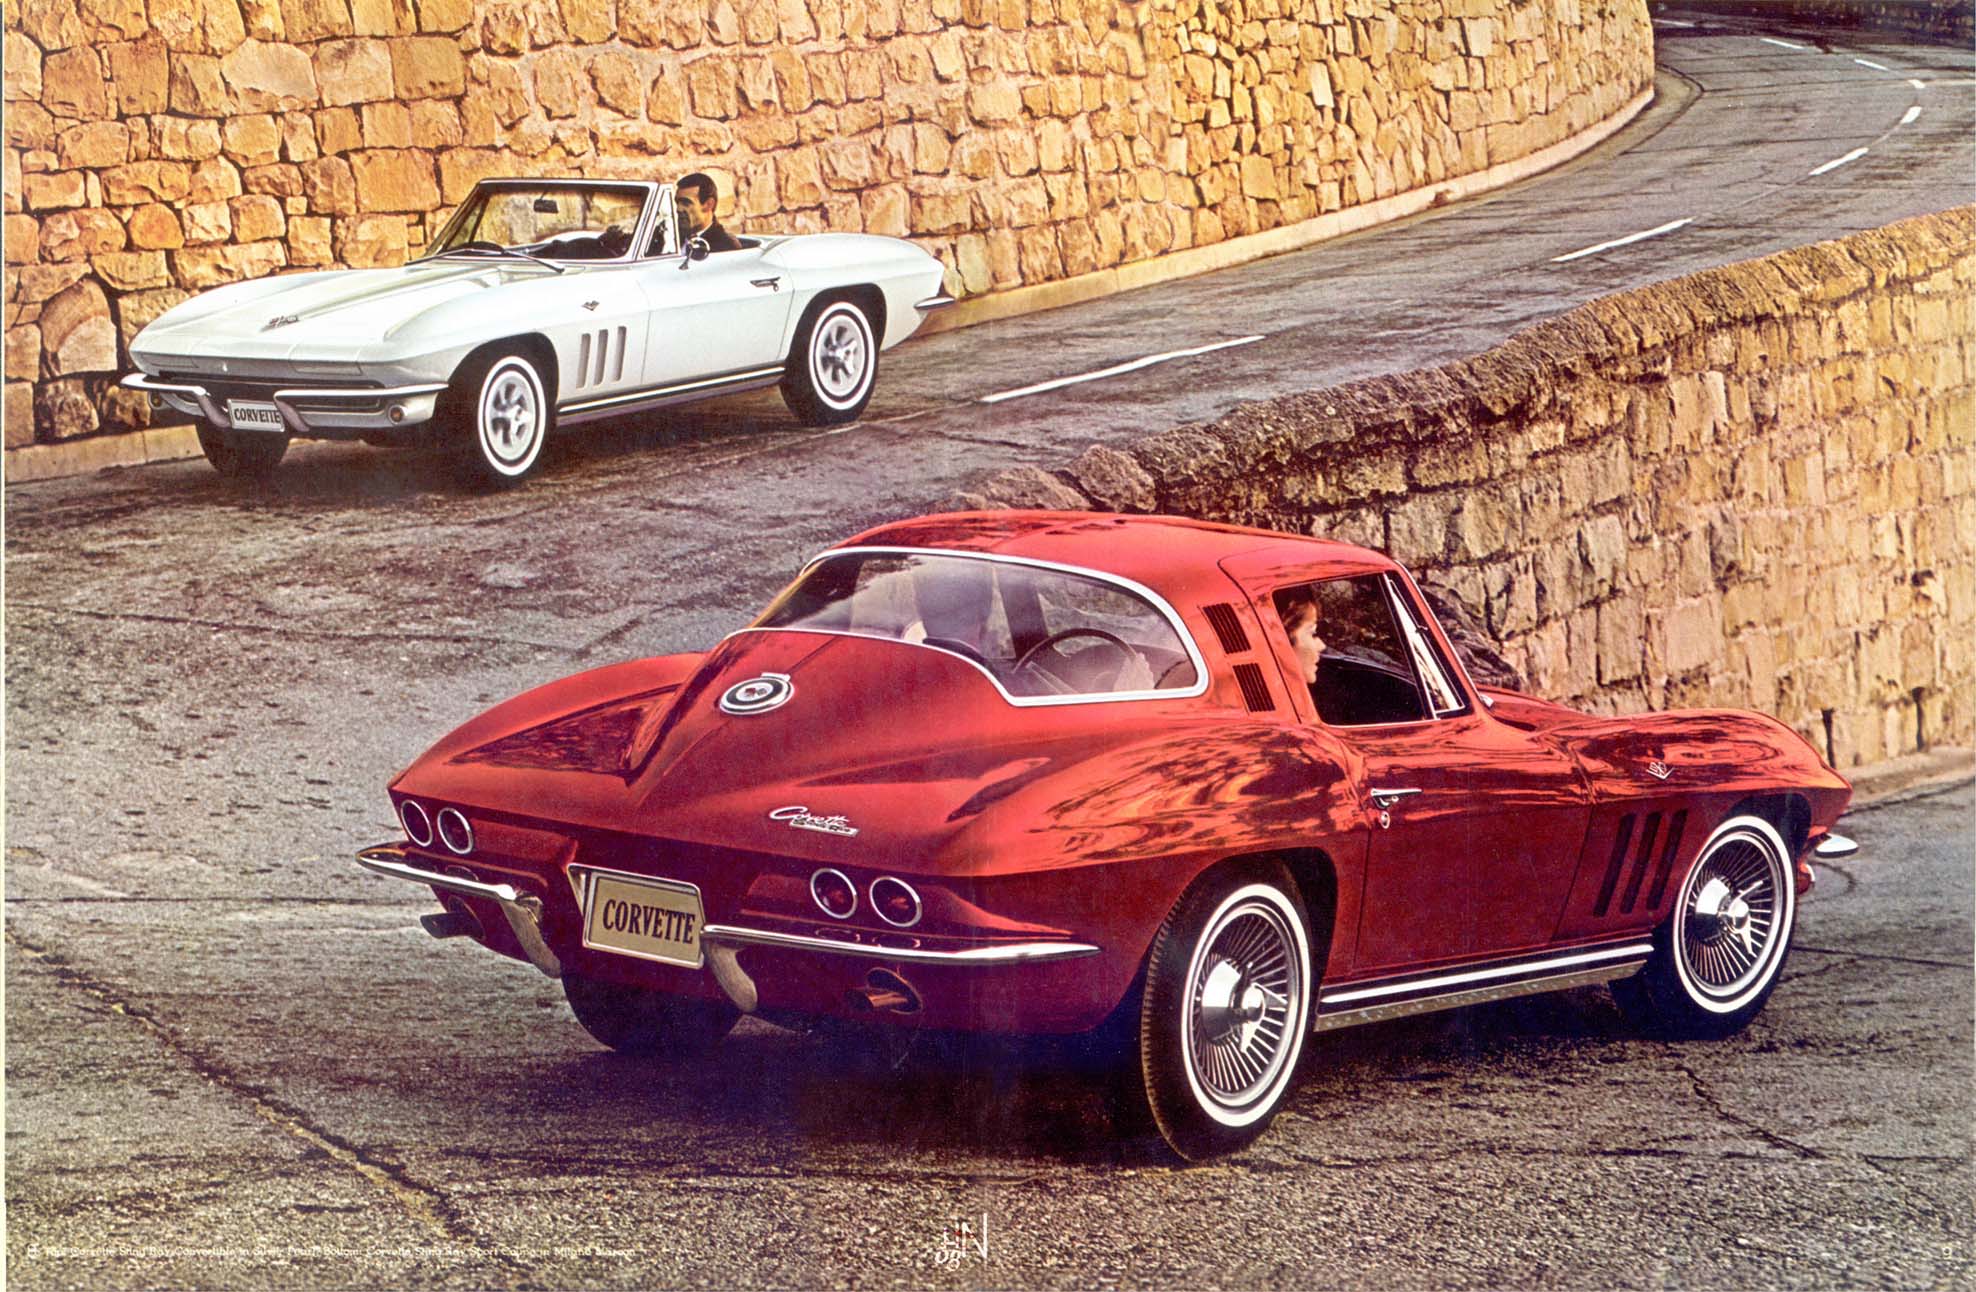 1965 Chevrolet Corvette-08-09